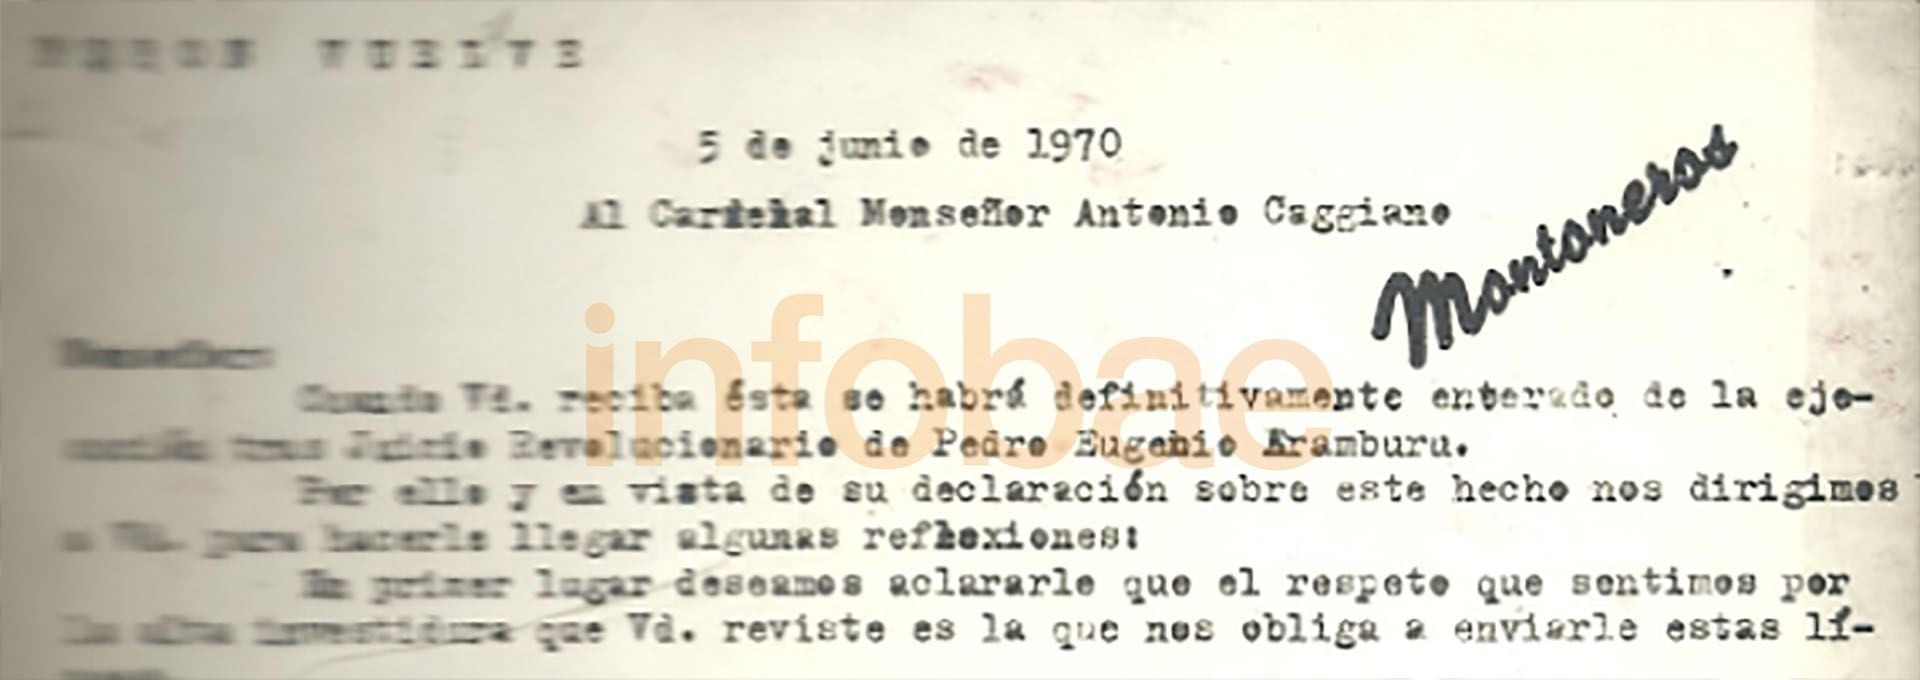 El 5 de junio de 1970, Montoneros le escribe una extensa carta al Cardenal Antonio Caggiano: “Nosotros sentimos gran respeto por la vida humana y si arriesgamos la nuestra en esta lucha sin cuartel es justamente porque queremos que las próximas generaciones de argentinos sean hombres libres”